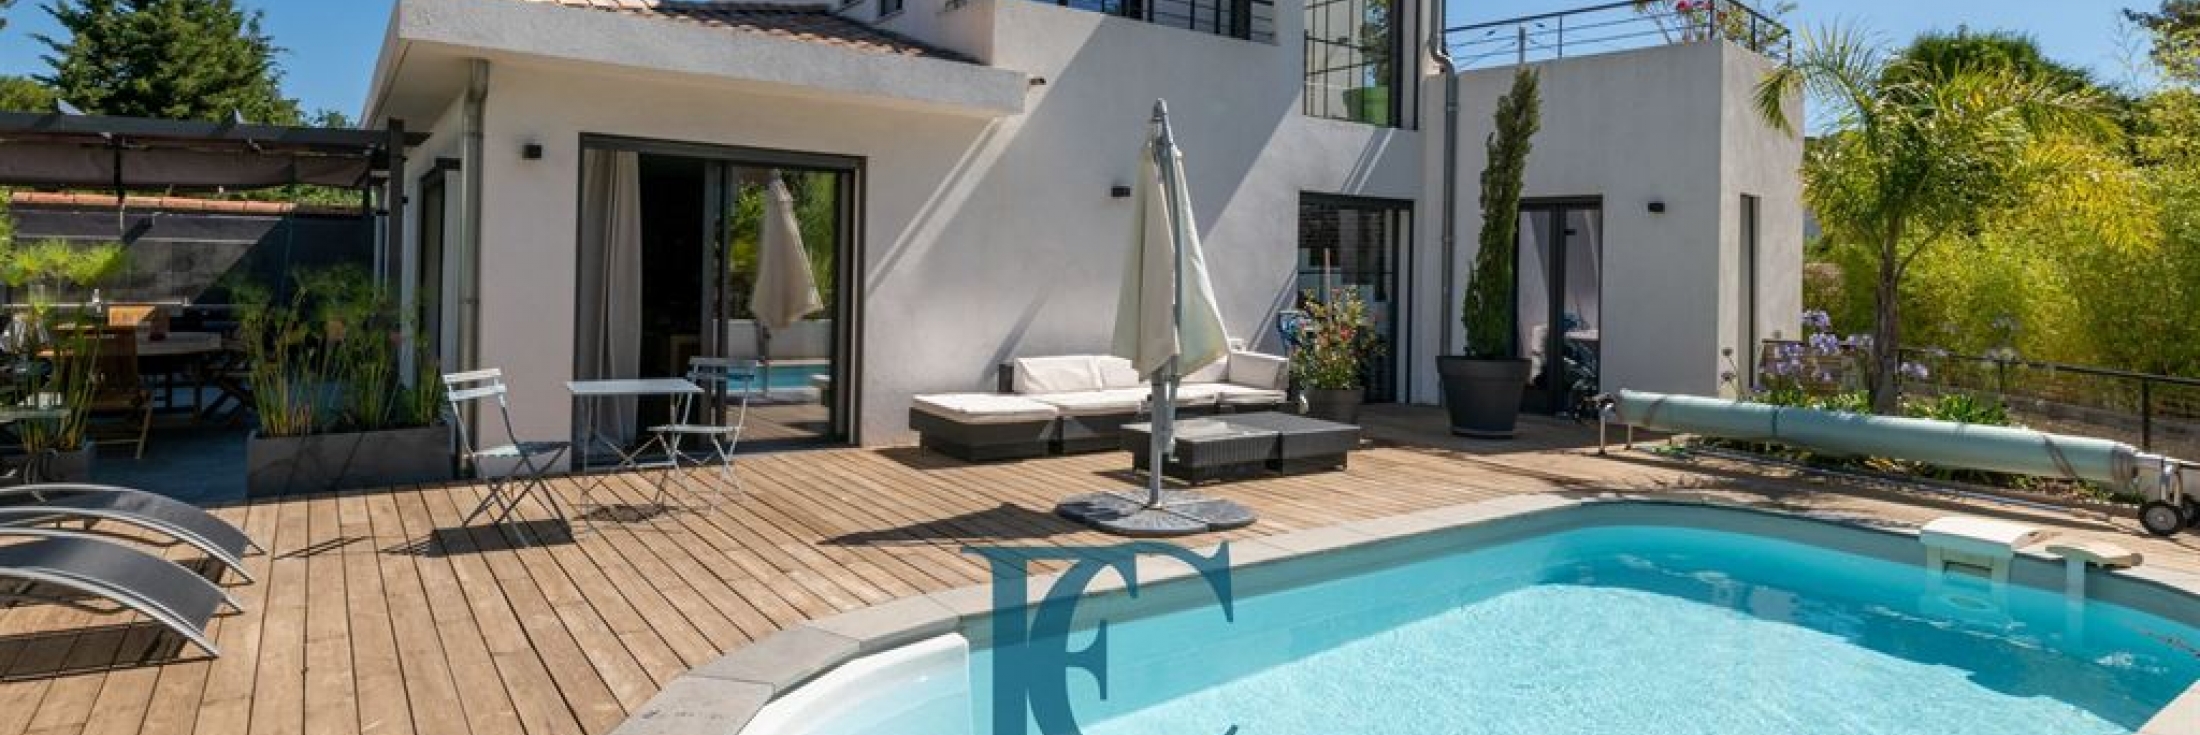 A vendre maison d’architecte à Six-Fours : villa T4 avec piscine dans secteur recherché